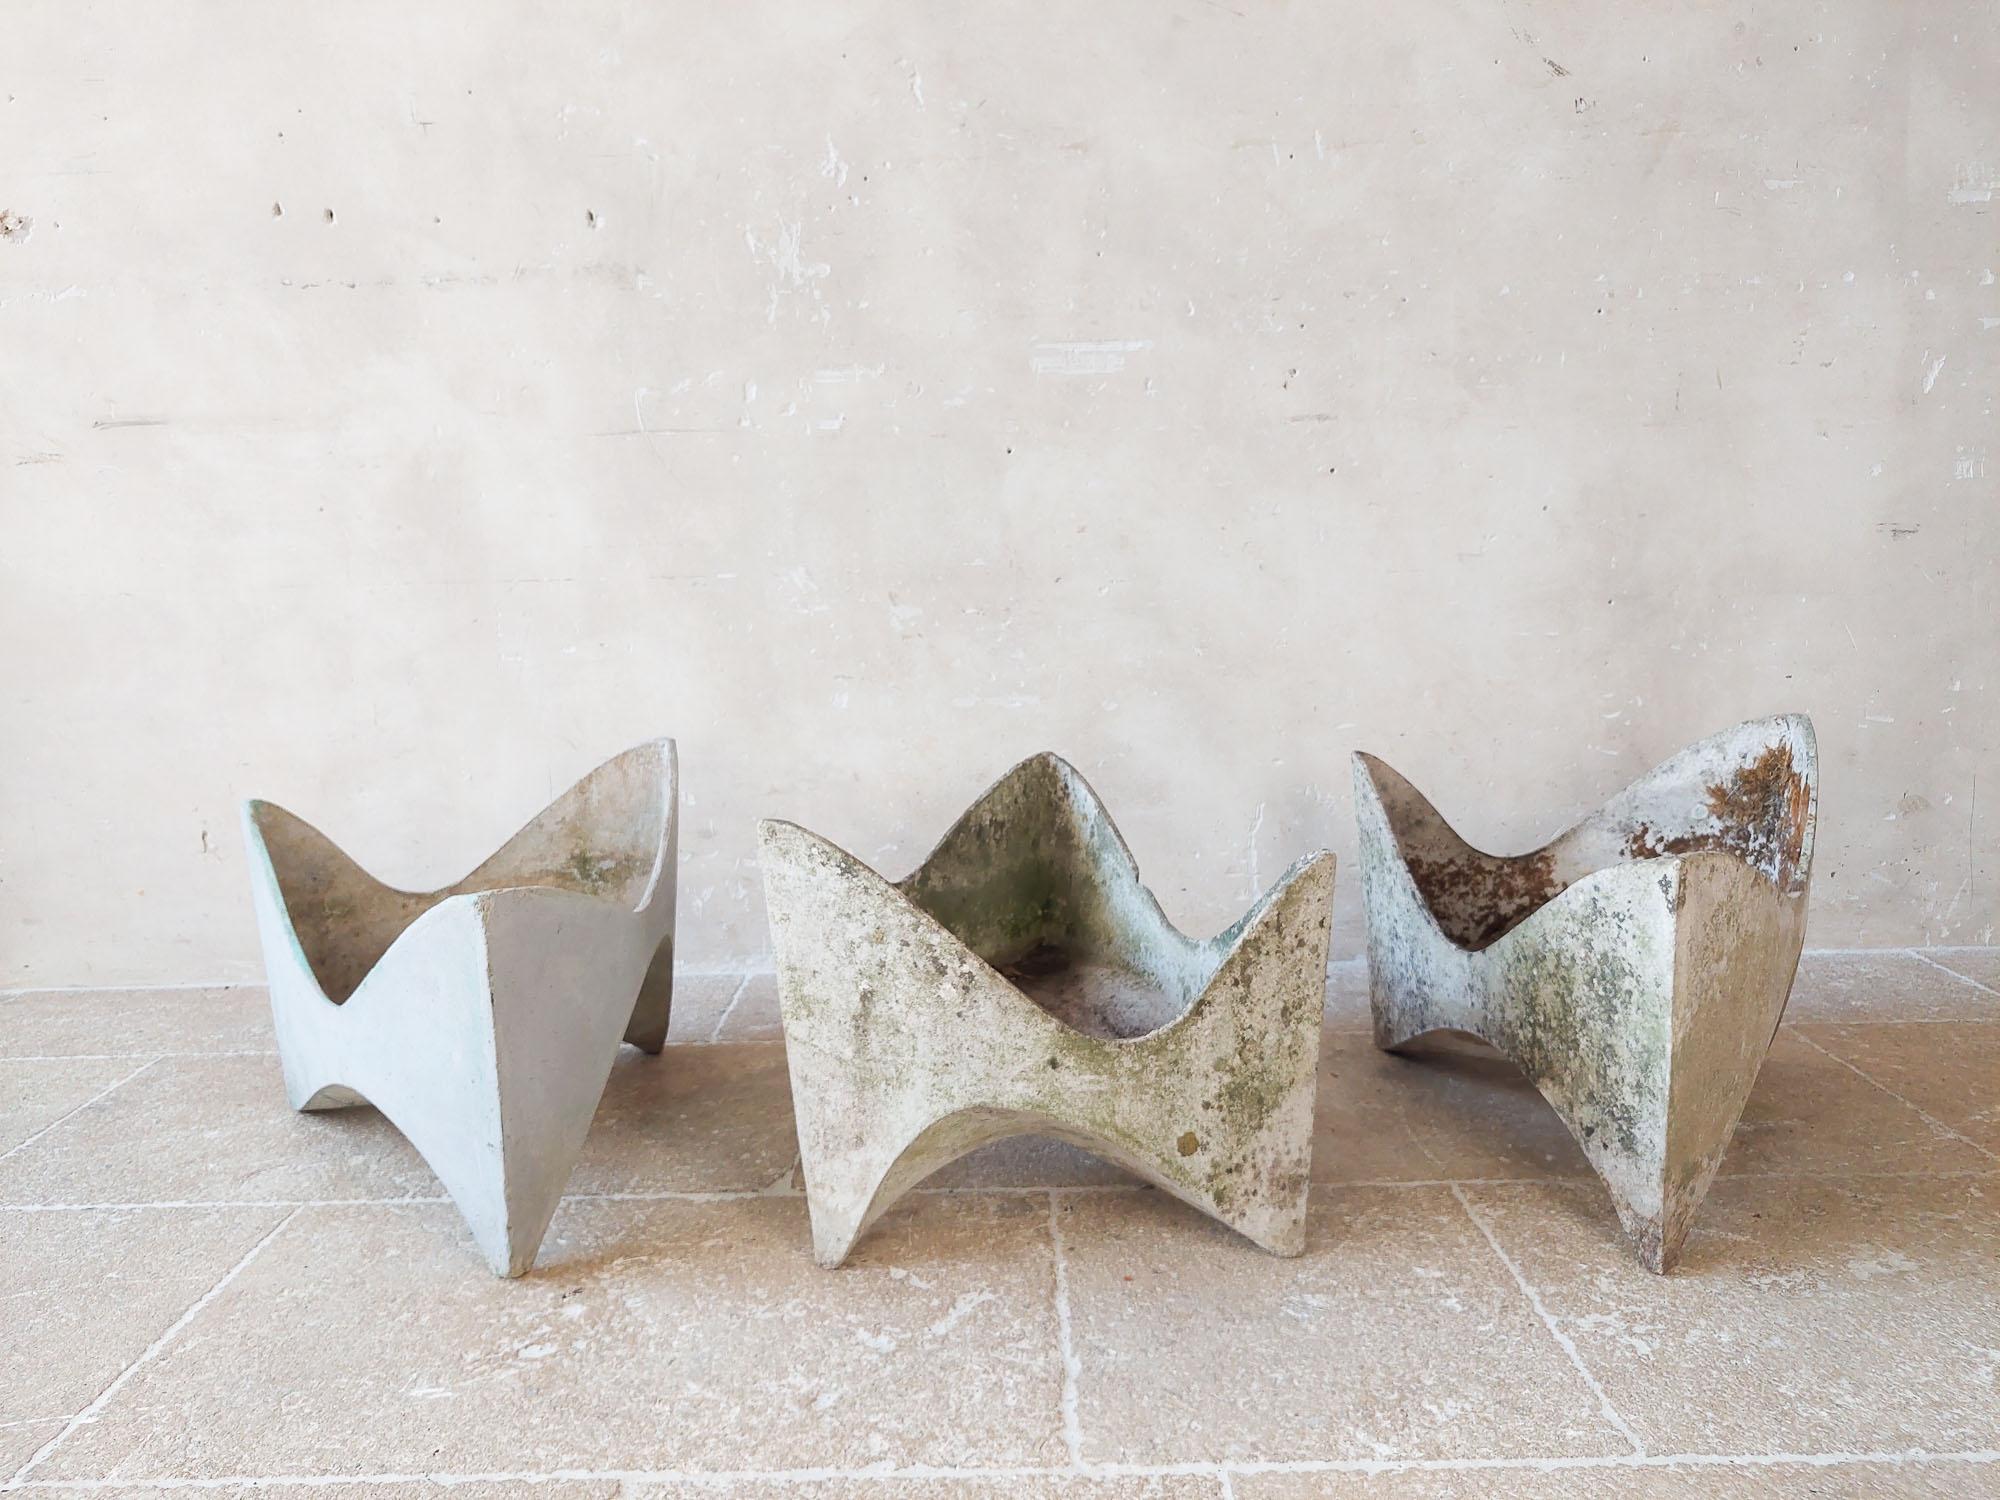 Schön geformtes dreieckiges Pflanzgefäß Tooth des Schweizer Architekten Willy Guhl.  (drei verfügbar, Preis pro Stück).

Die aus Faserzement hergestellten Pflanzgefäße sind leicht und in allen Klimazonen haltbar. Diese skulpturalen Pflanzgefäße